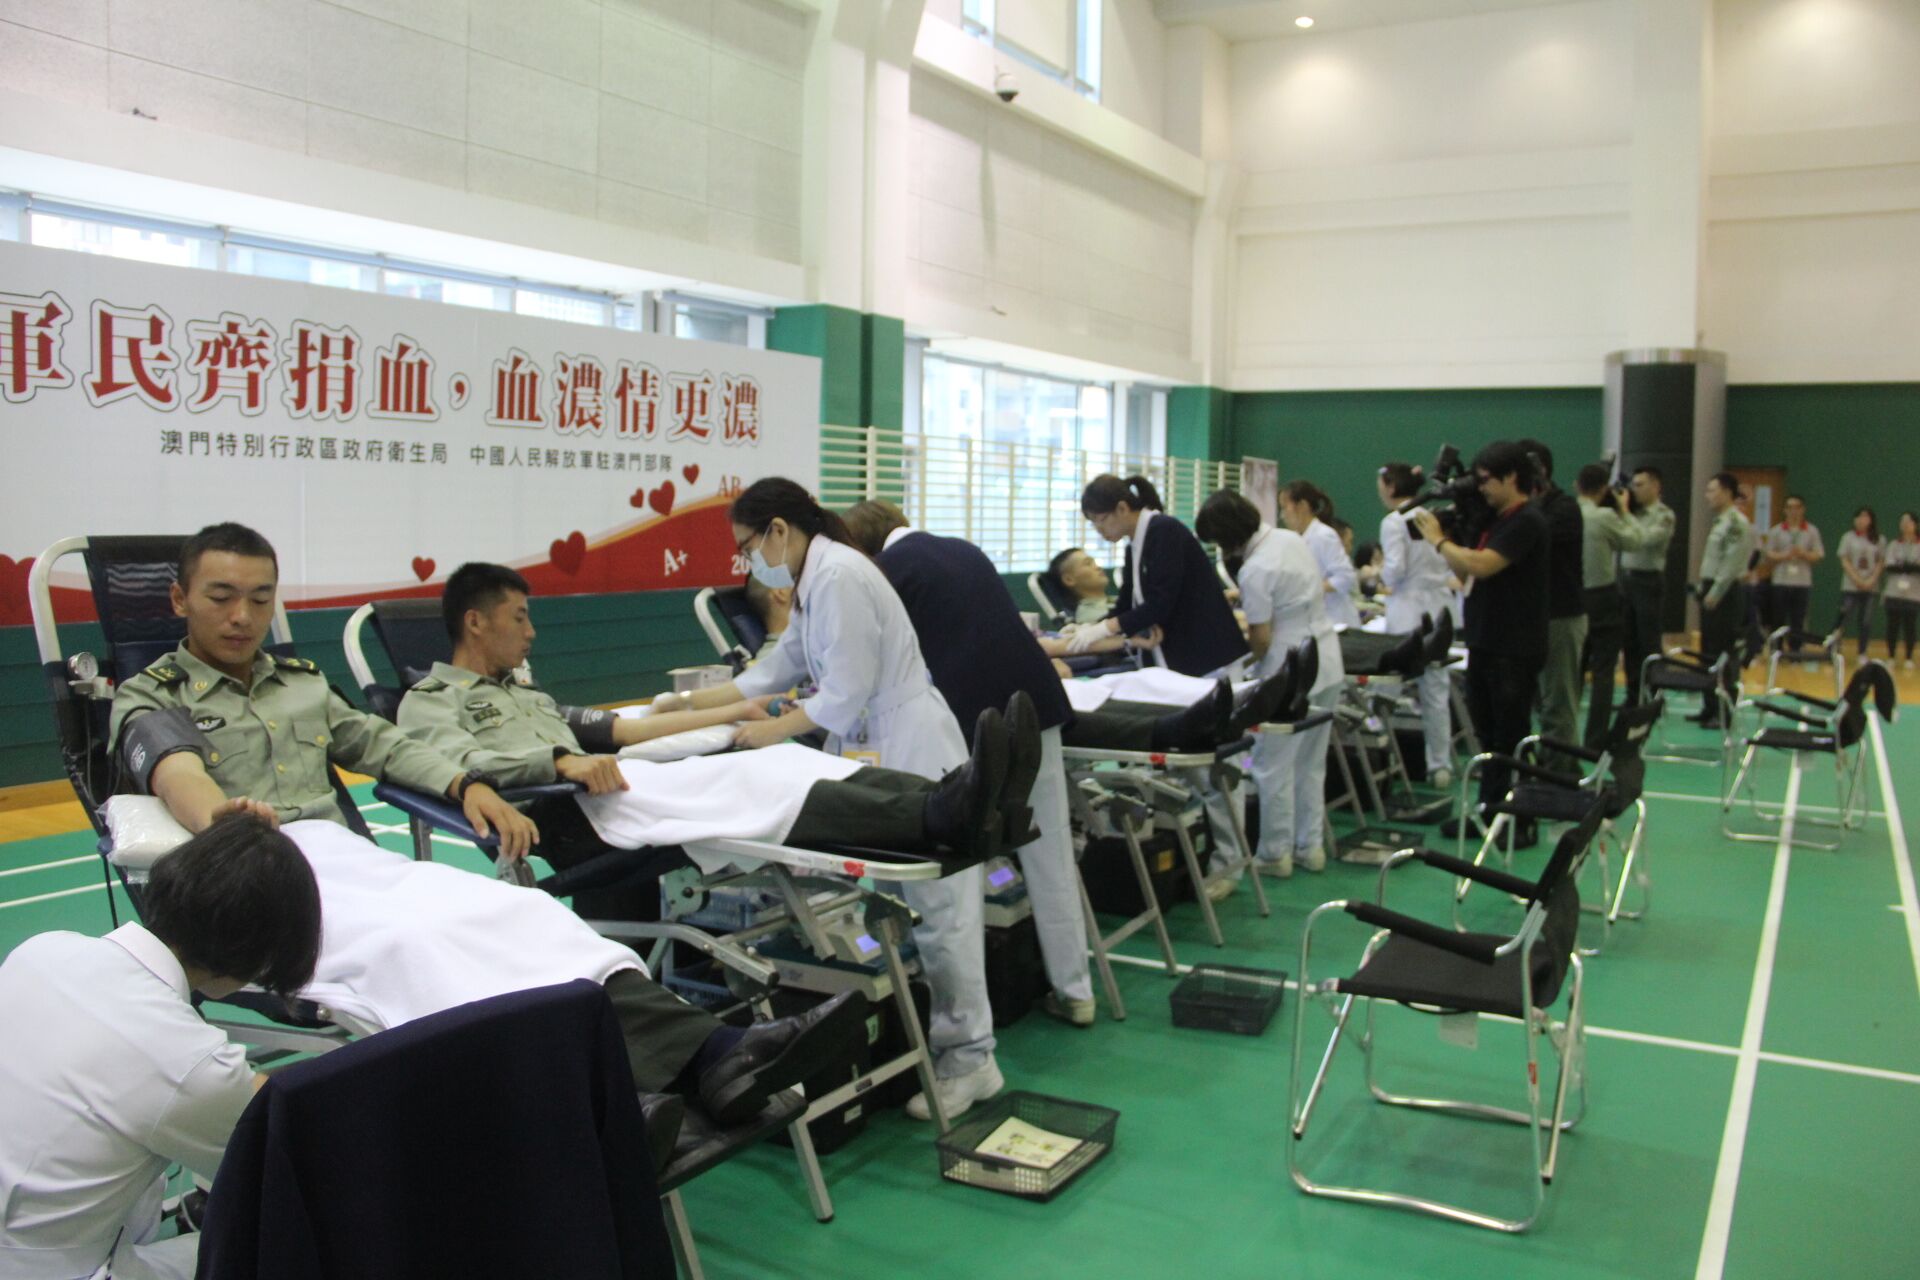 逾百名解放軍參加捐血活動